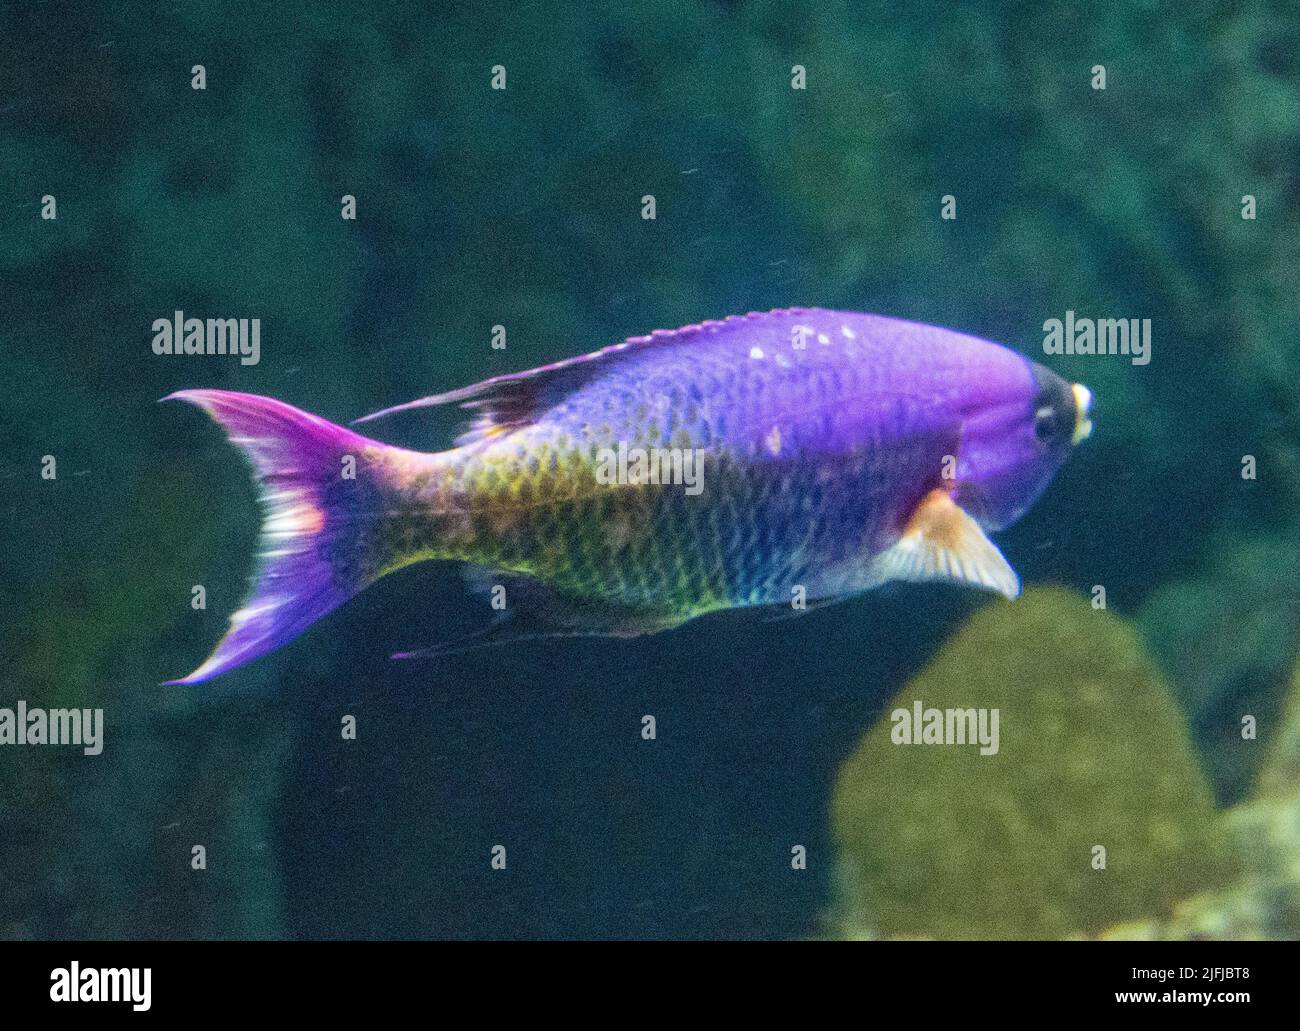 Pesce viola brillante con squame gialle sulla coda, labbra gialle e una maschera di bandito sugli occhi. Foto Stock